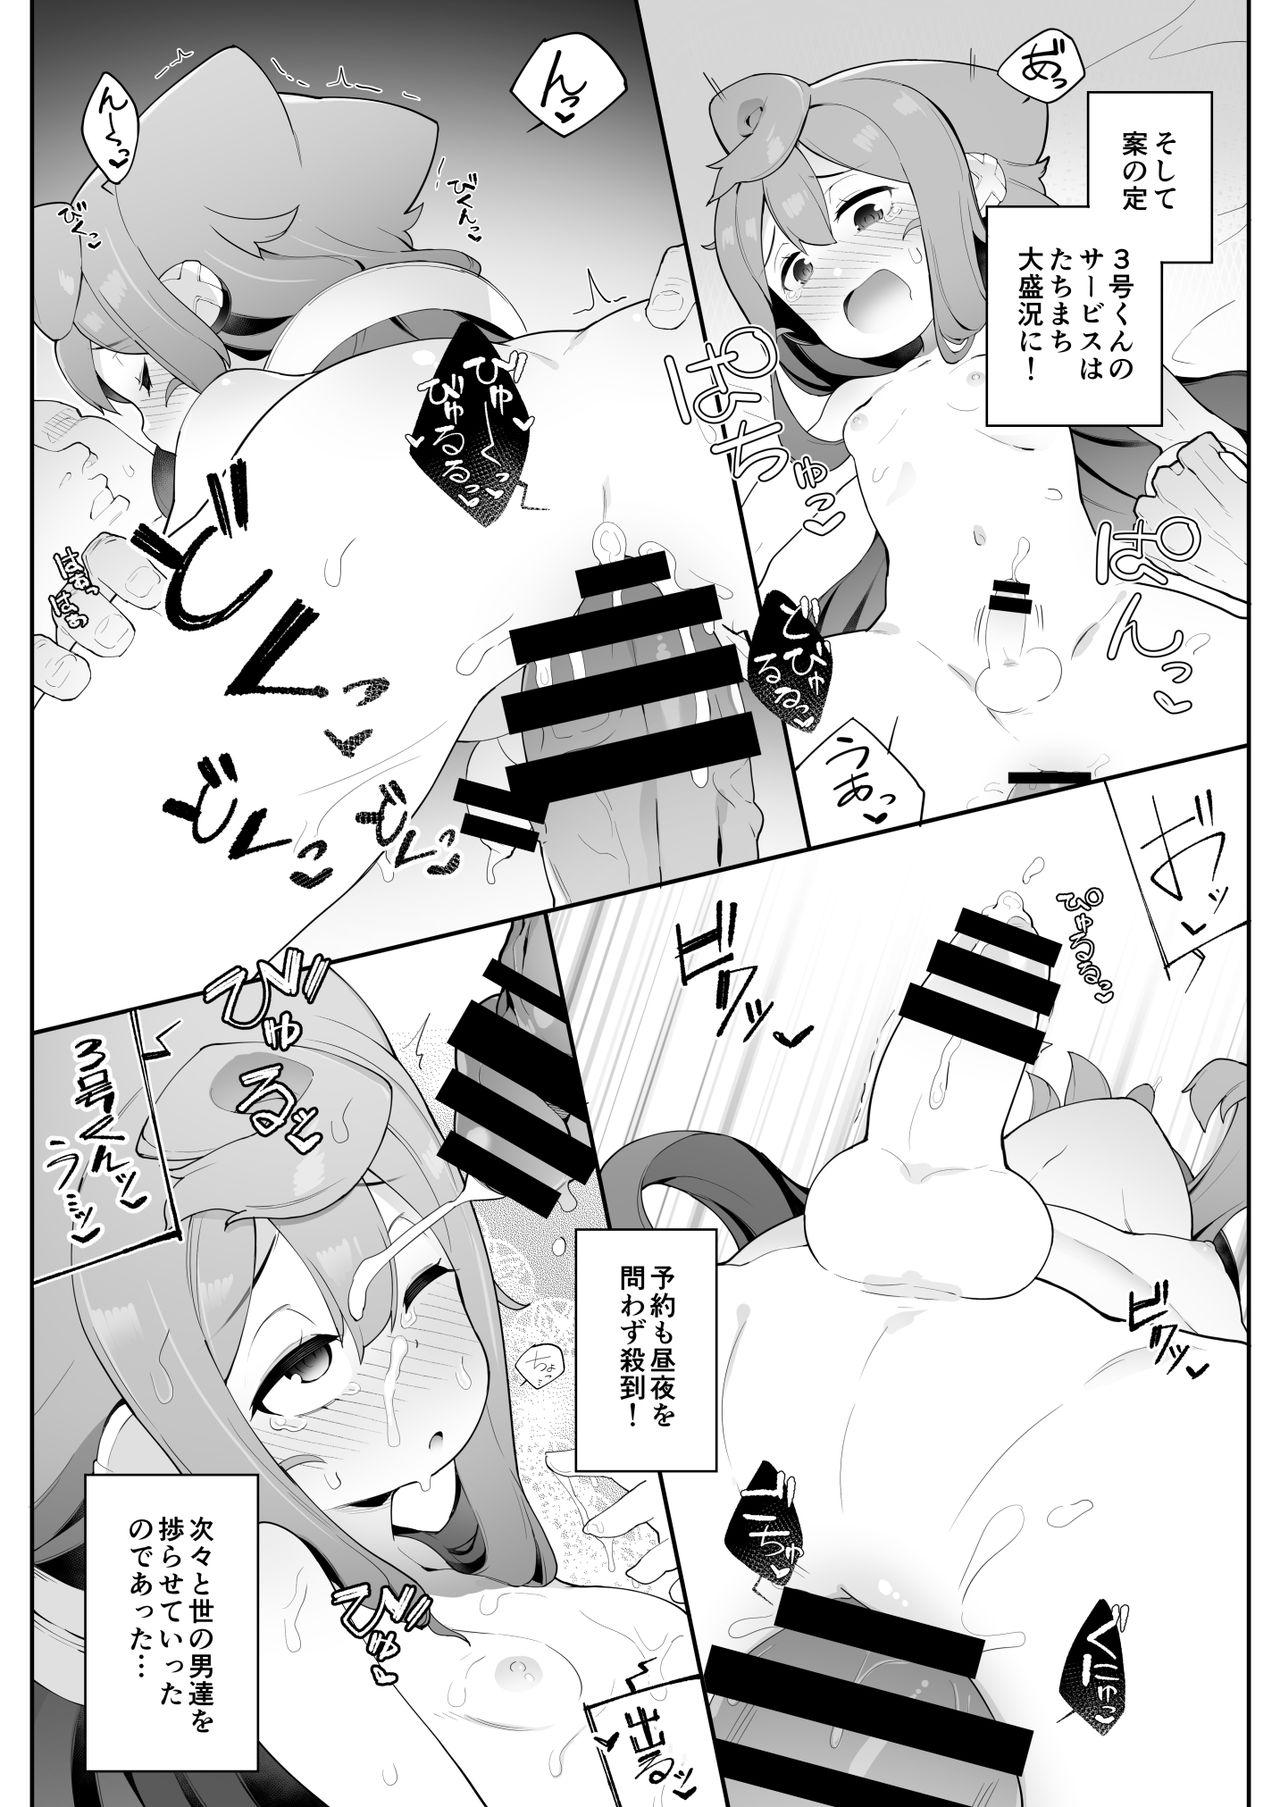 Short (Akihabara Chou Doujinsai) [Kuropoplar (Nyakkuru)] HakaDol! 3-gou-kun no Mesuochi Tokunou DeliHeal Service (Hacka Doll) [Digital] - Hacka doll Mamadas - Page 6